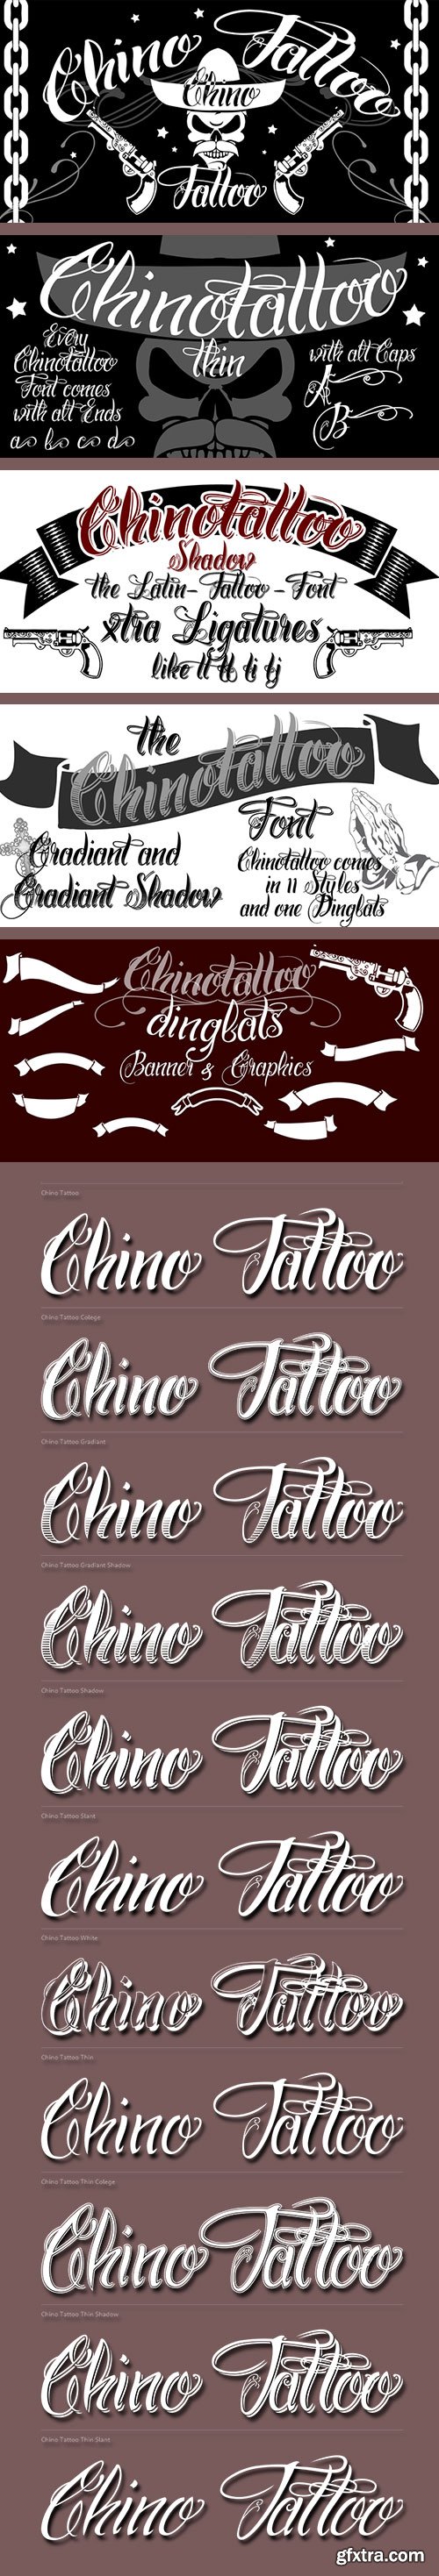 Chino Tattoo - Best Fonts for all Tattoo Artists 12xOTF $59